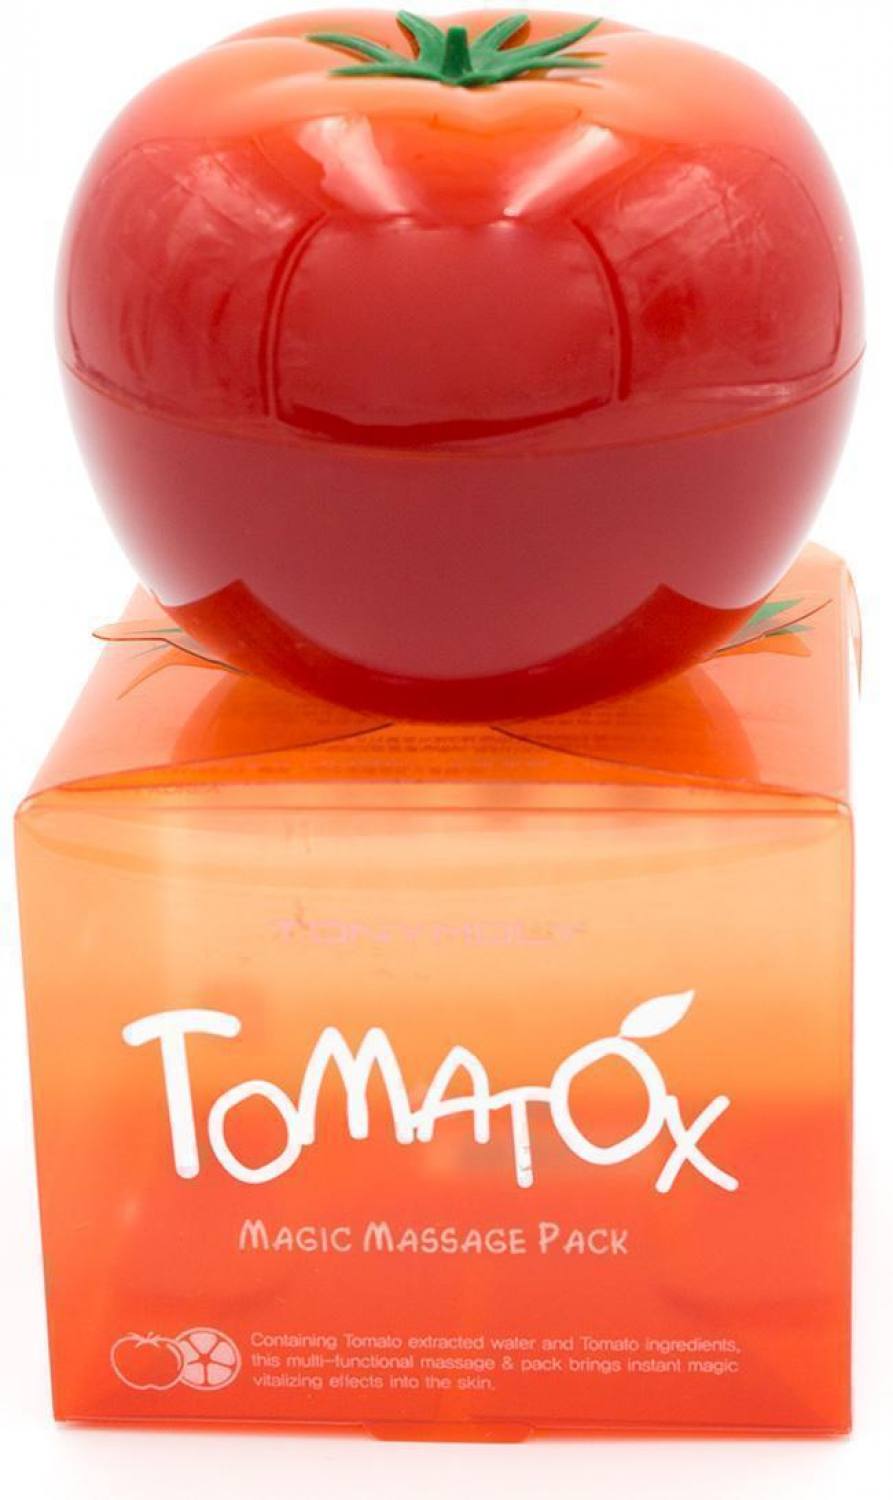 Маска для лица томатная массажная TOMATOX MAGIC MASSAGE PACK Tony Moly. Артикул 081800043